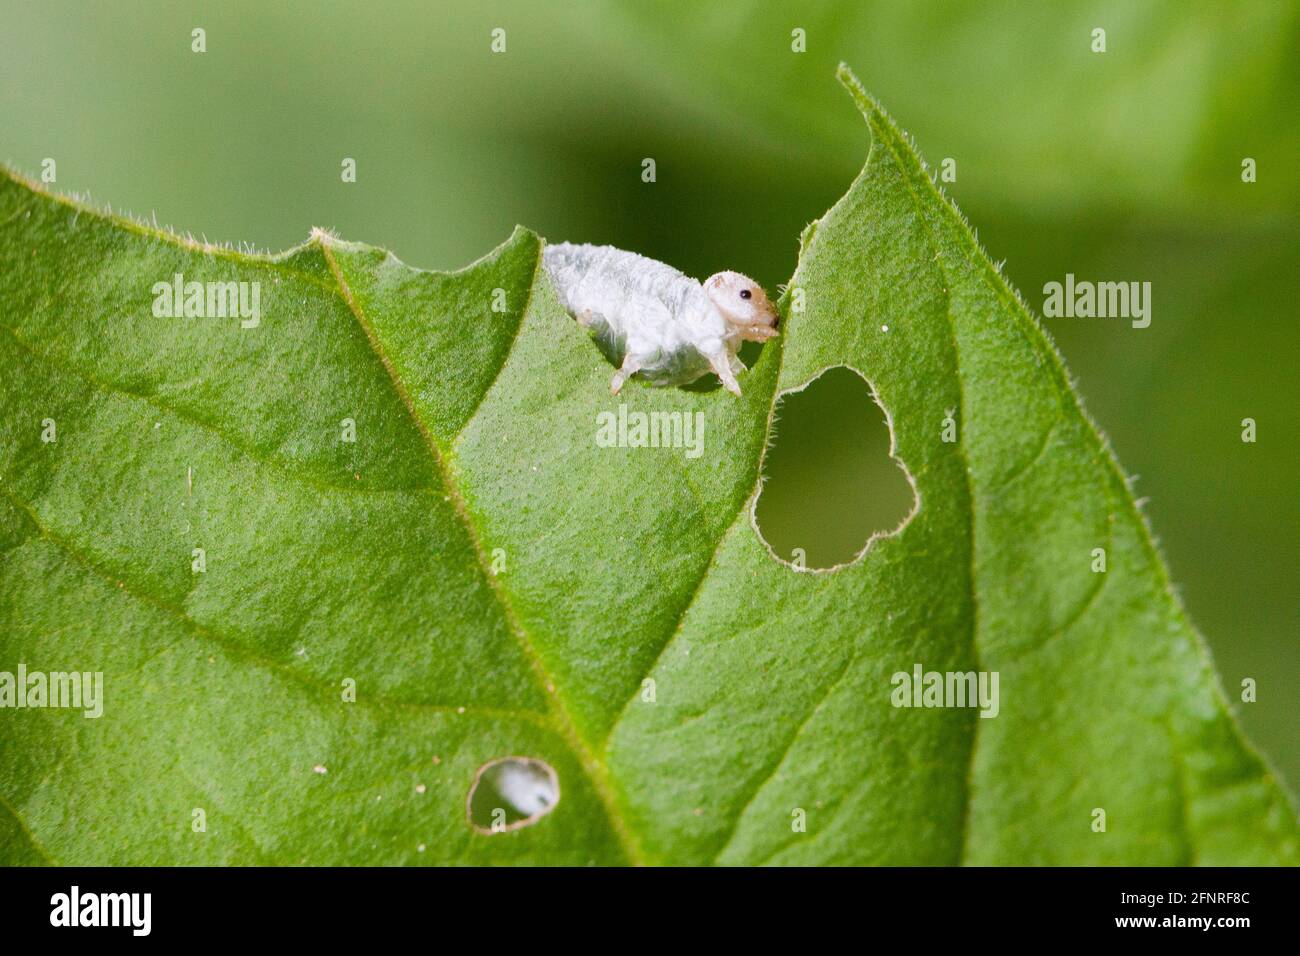 Hojas de la larva del sawfly comiendo ( Tenthredinoidea ) - Estados Unidos Foto de stock